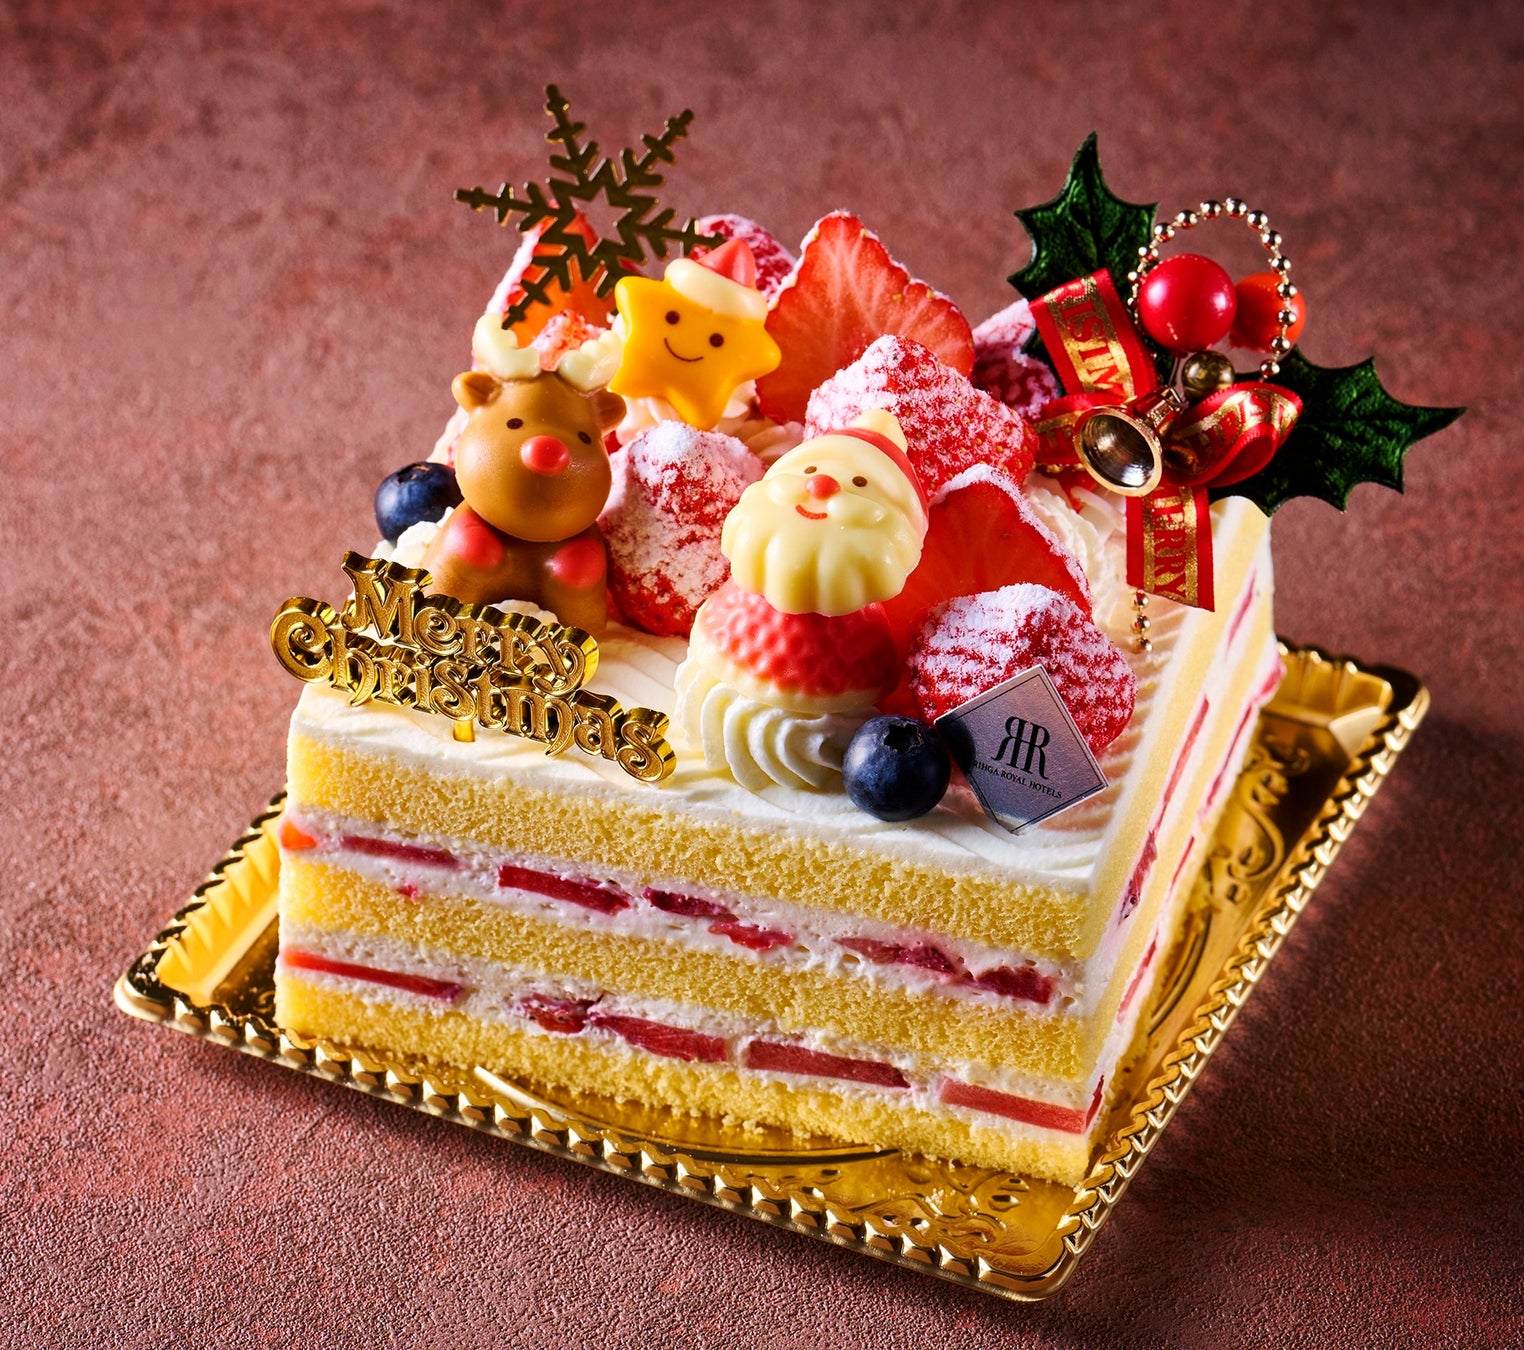 「苺のサンタデコレーションケーキ」 イメージ